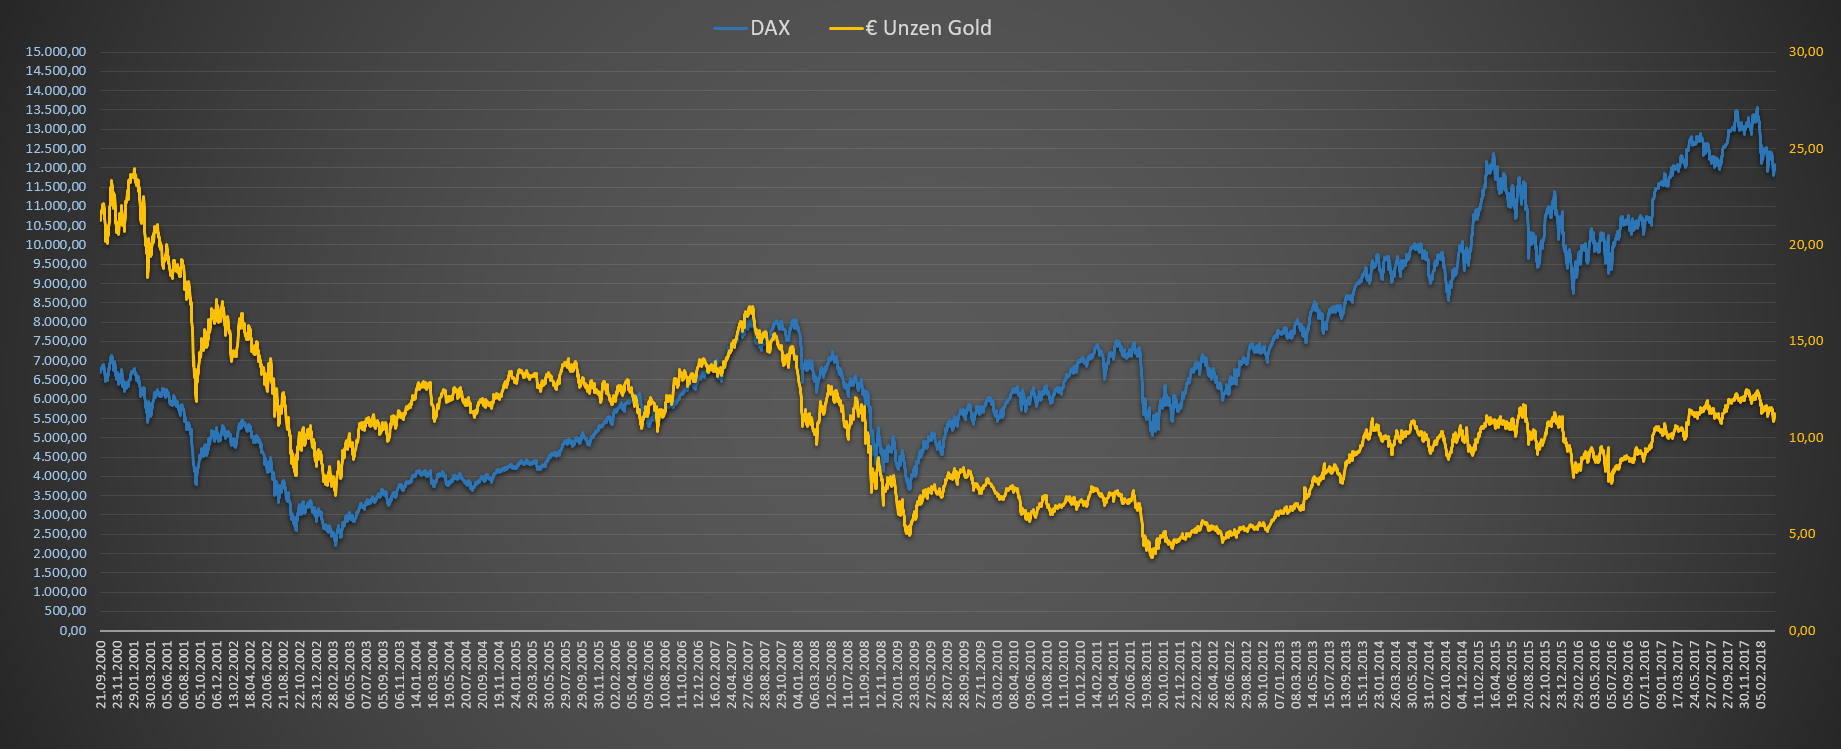 Auswertung der Strategie DAX zu Unzen Gold